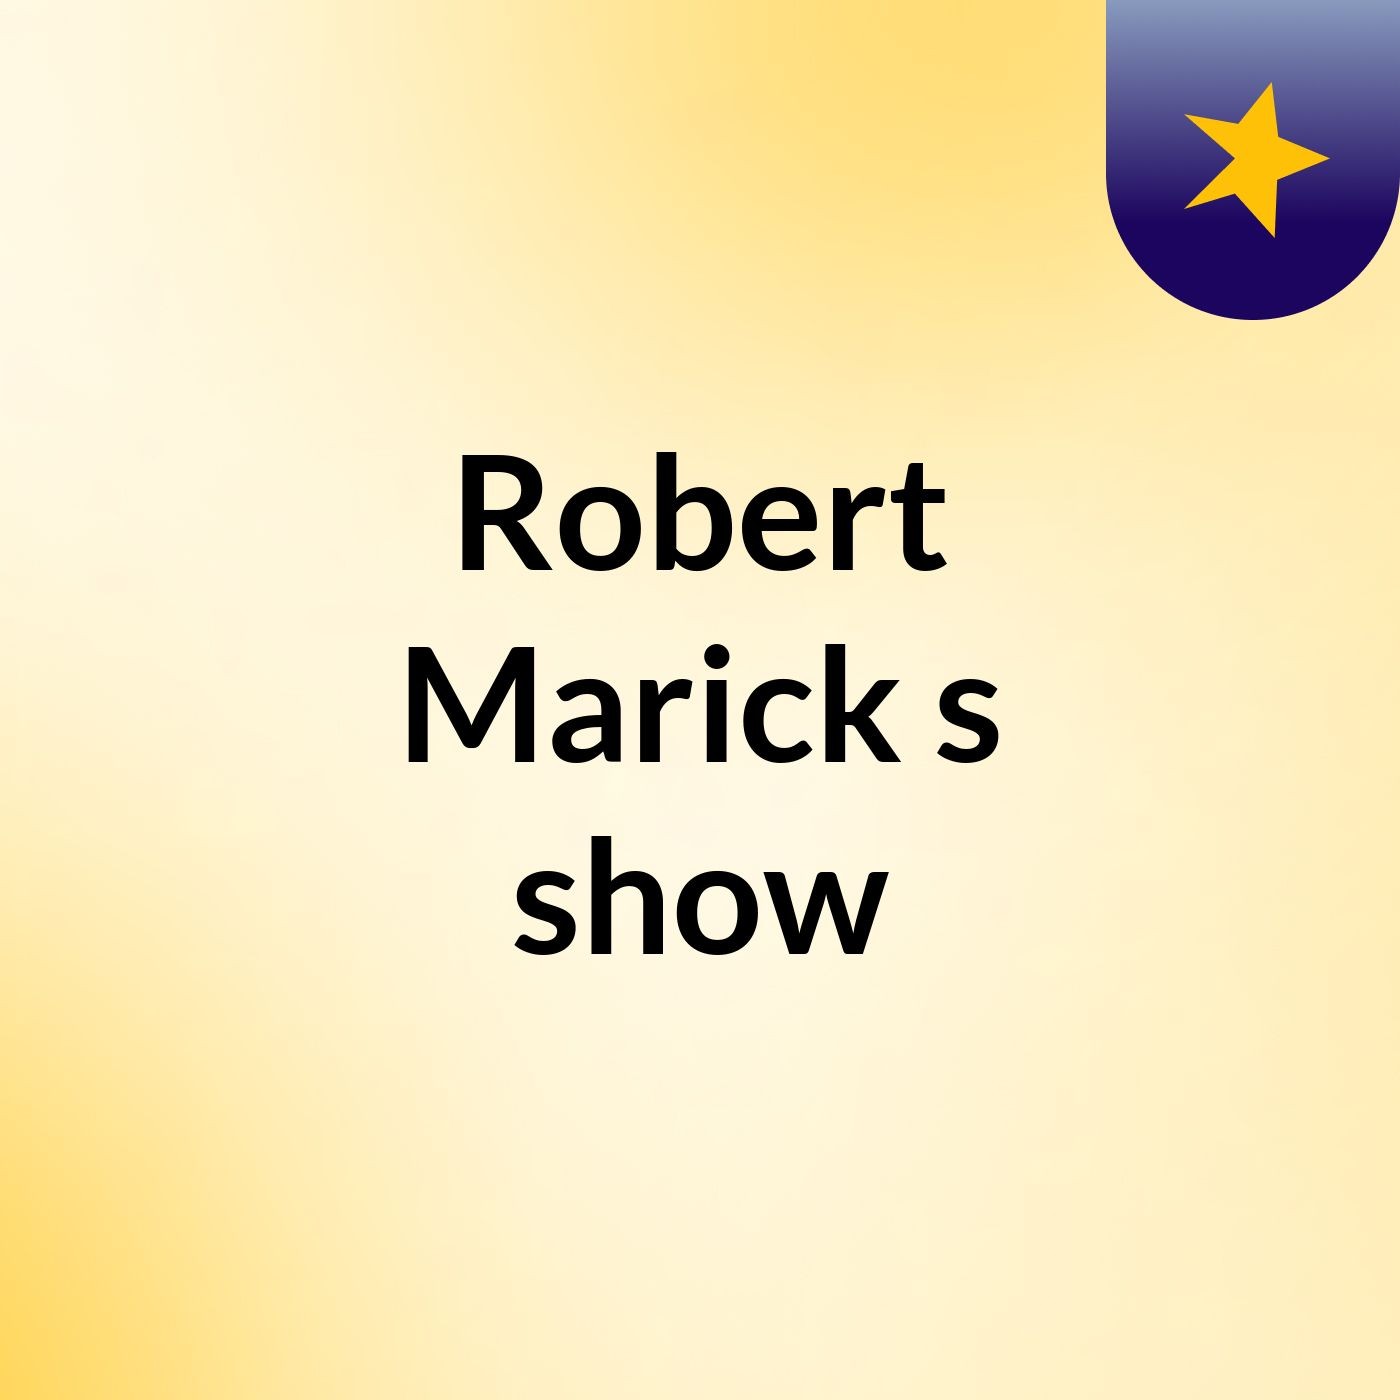 Episode 2 - Robert Marick's show